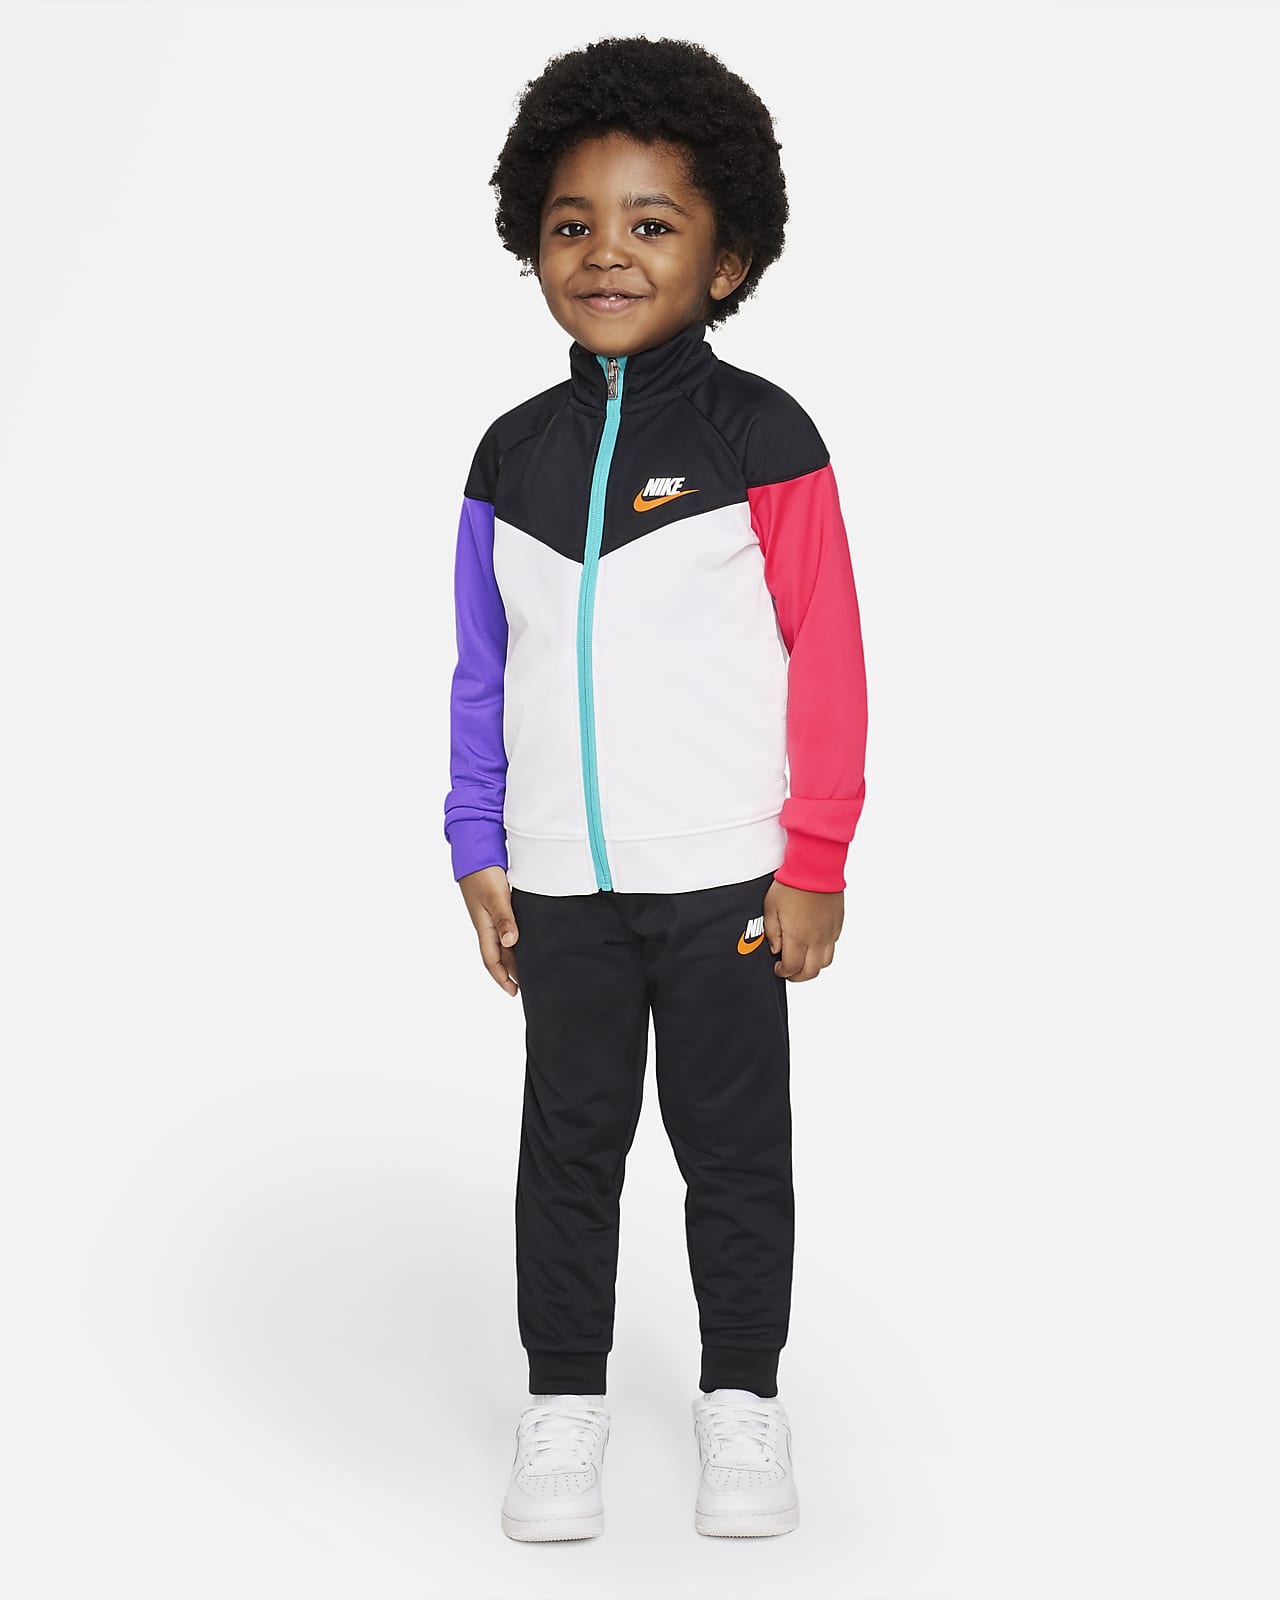 Nike Sportswear Conjunt de xandall - Infant